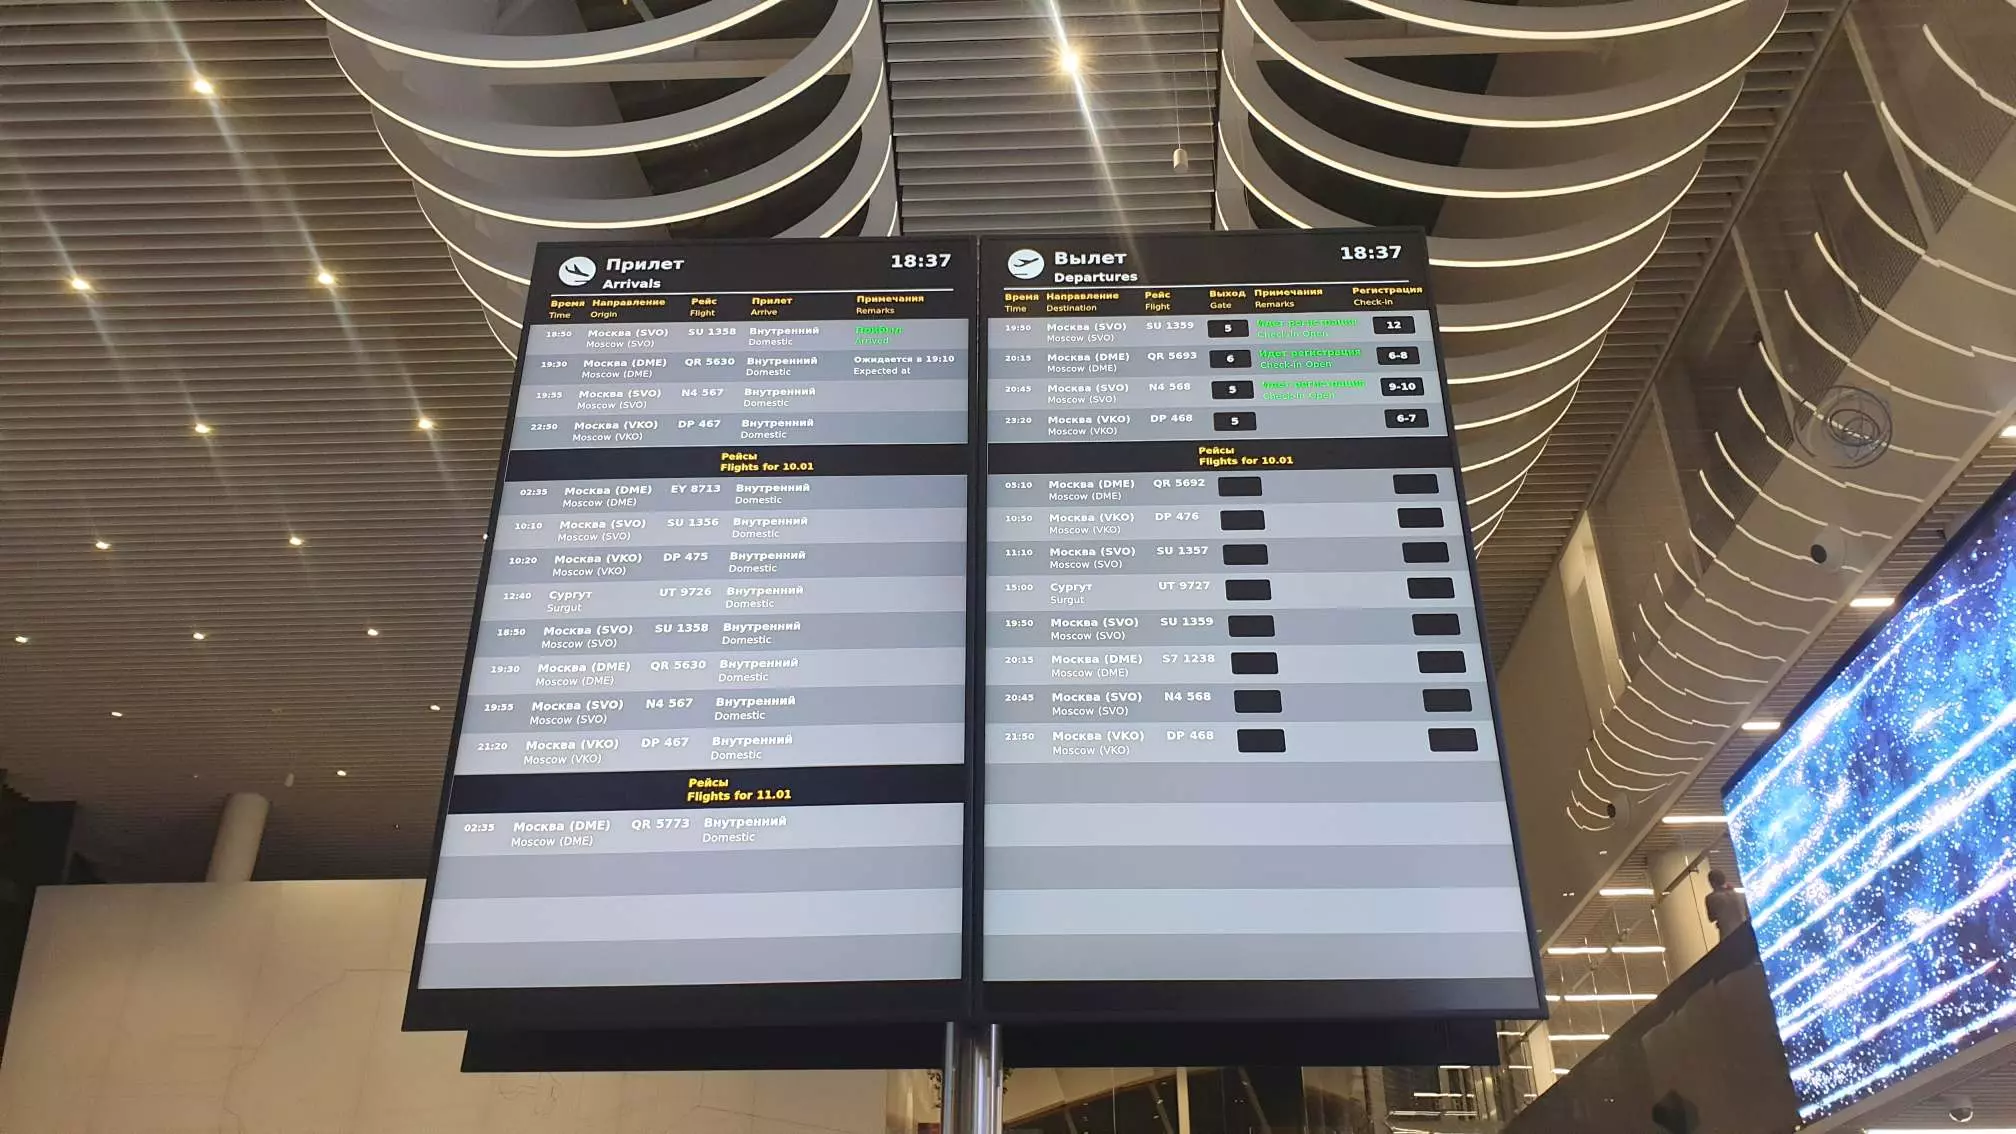 Аэропорт саратов (центральный, rtw): обзор саратовского аэропорта, его код, сайт и контакты для получения справочной информации онлайн и оффлайн